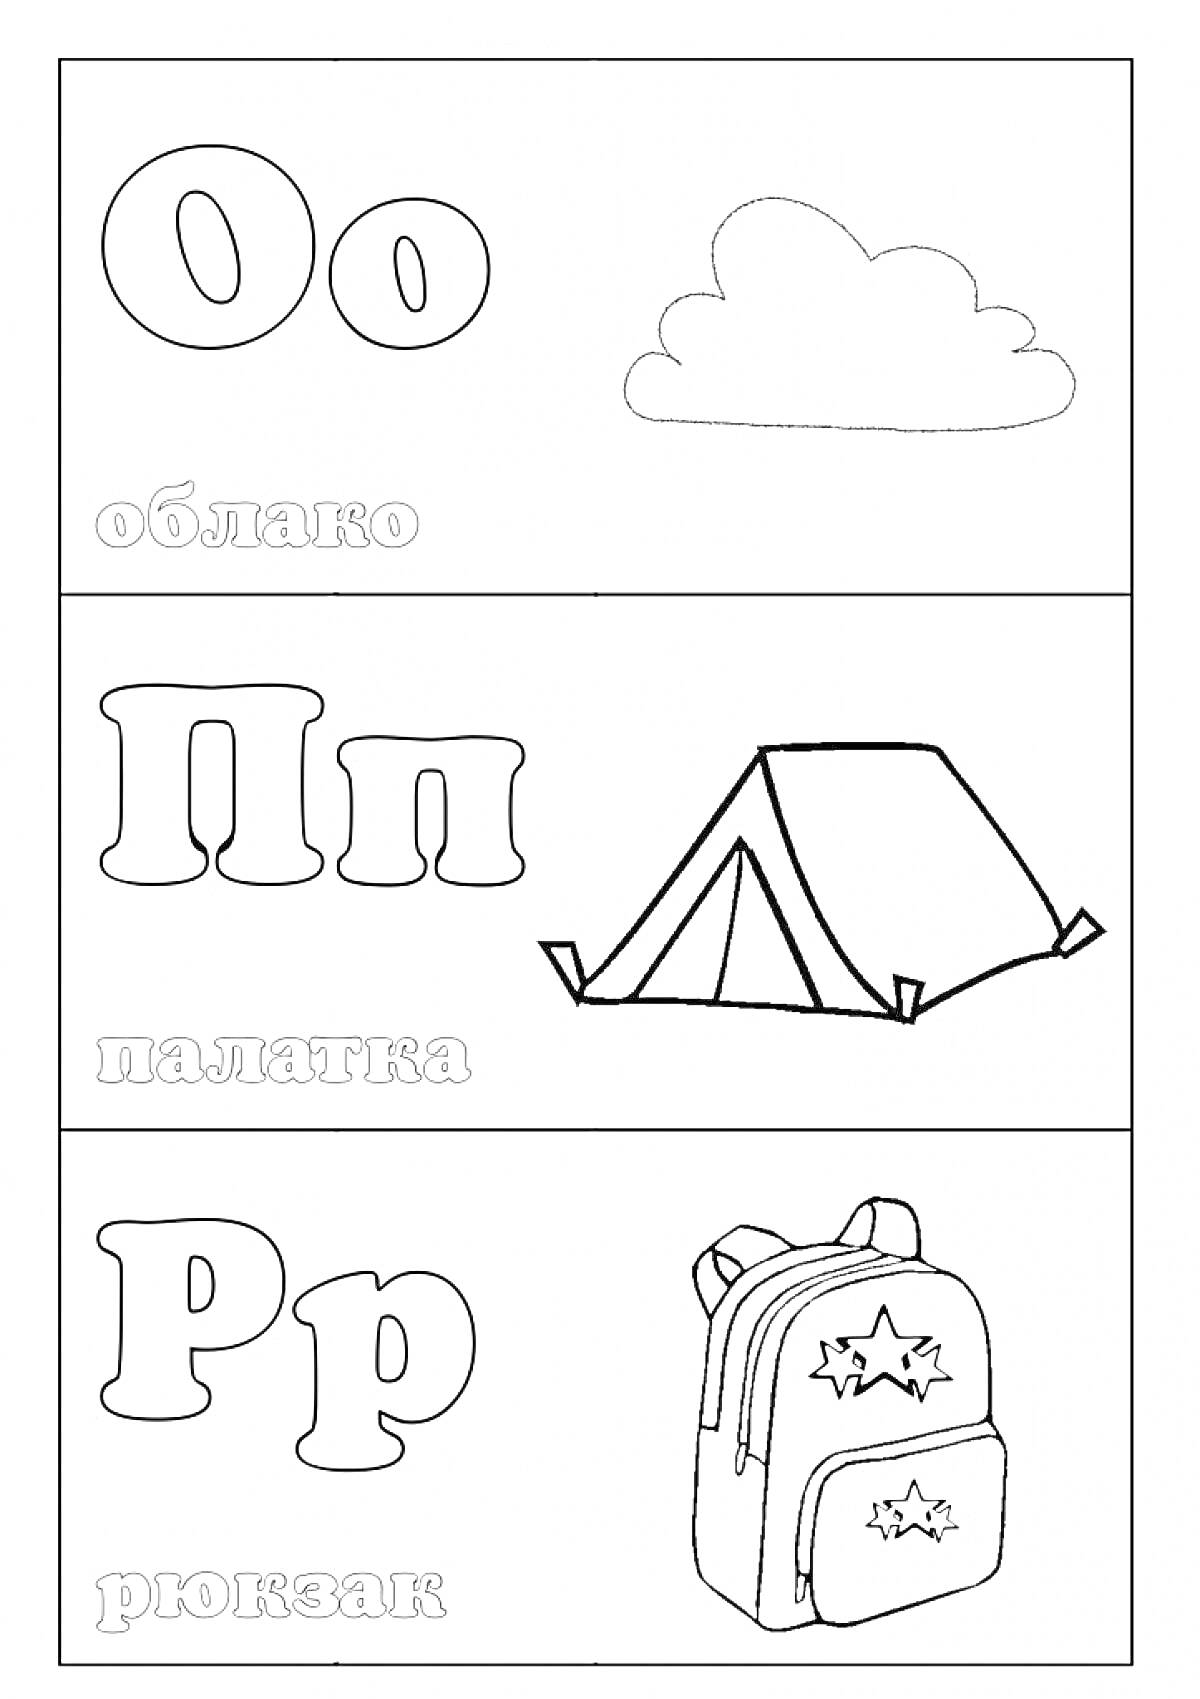 Буквы О, П, Р с изображениями облака, палатки и рюкзака